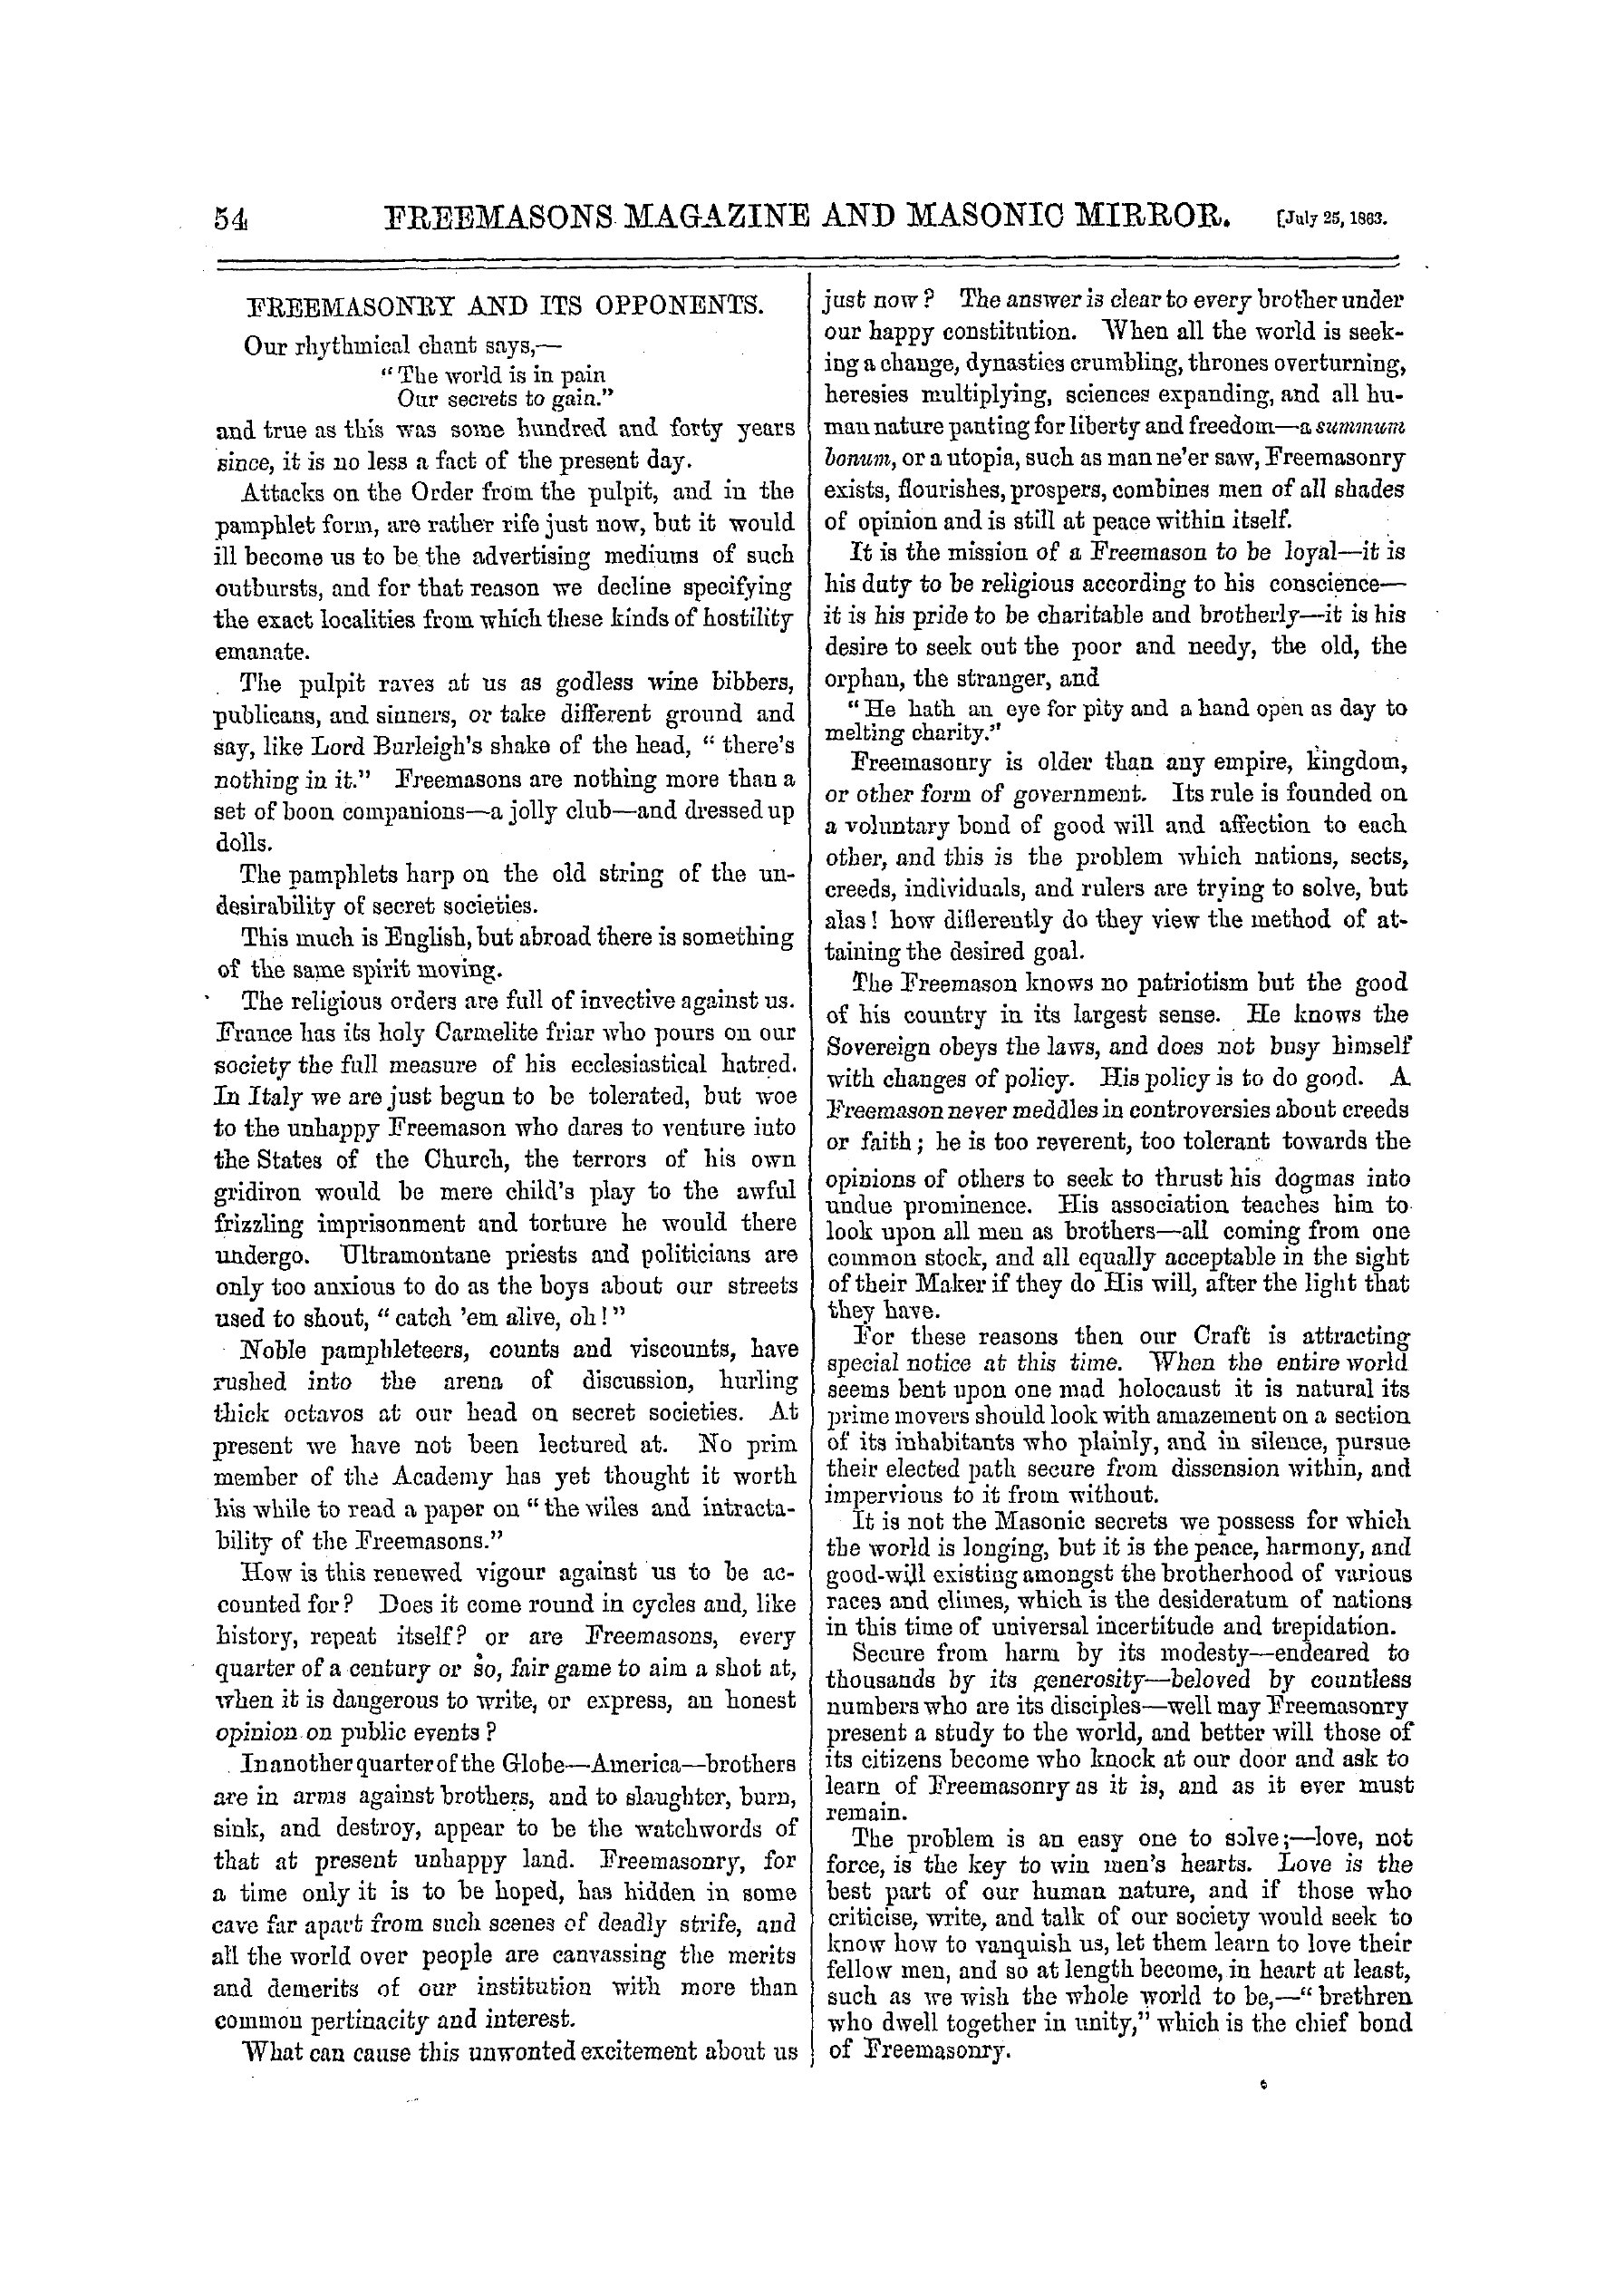 The Freemasons' Monthly Magazine: 1863-07-25 - Freemasonry And Its Opponents.